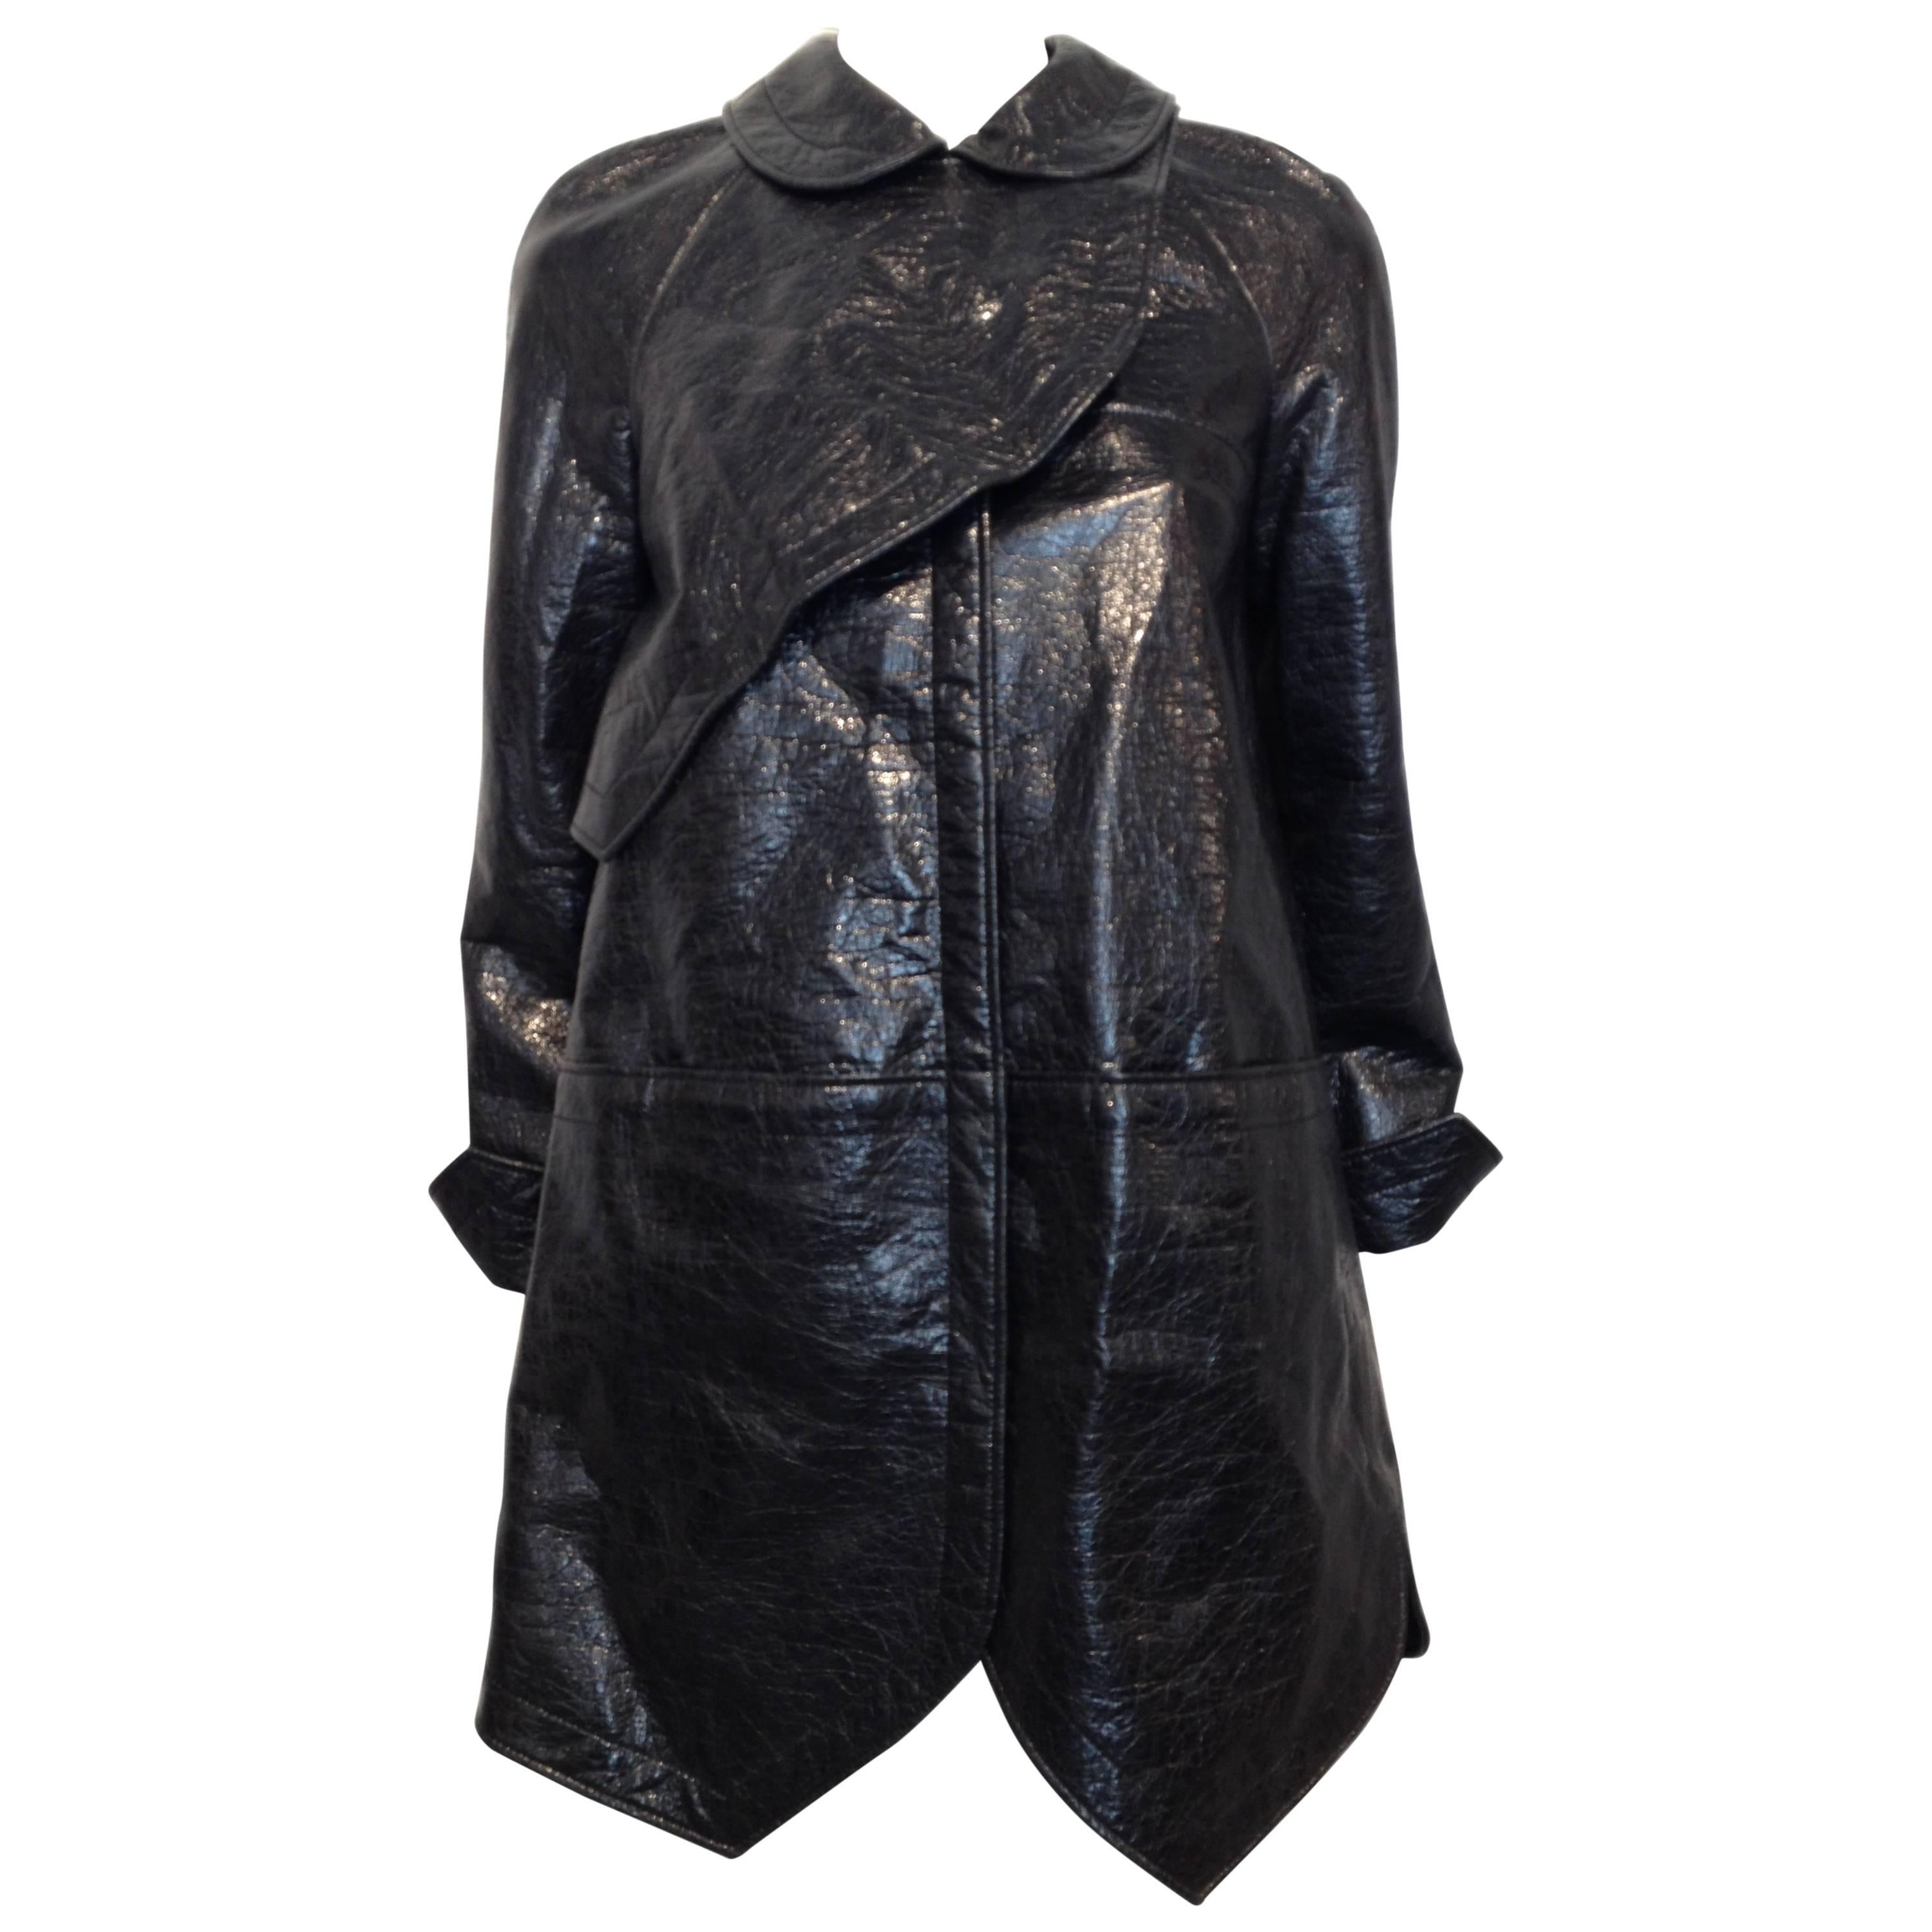 Balenciaga Black Shiny Textured Coat Size 36 (4)